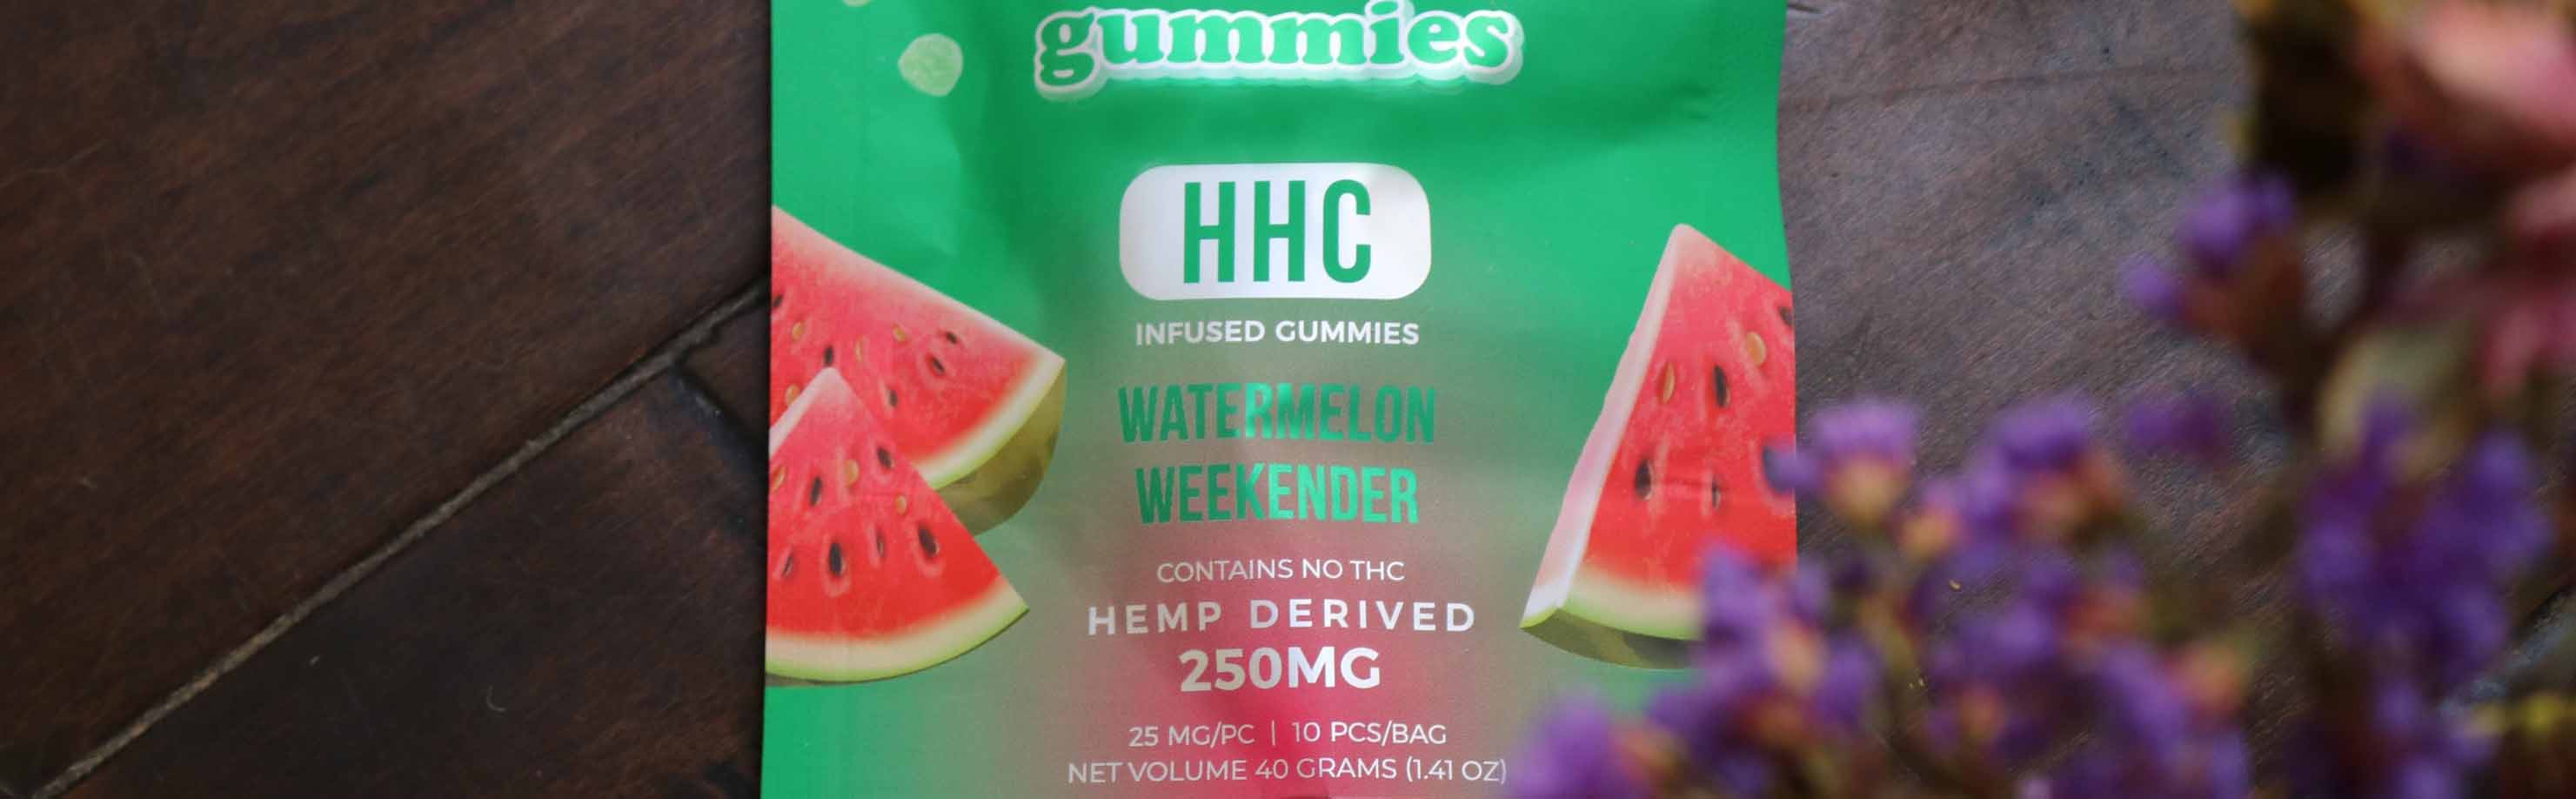 hhc-gummies-2